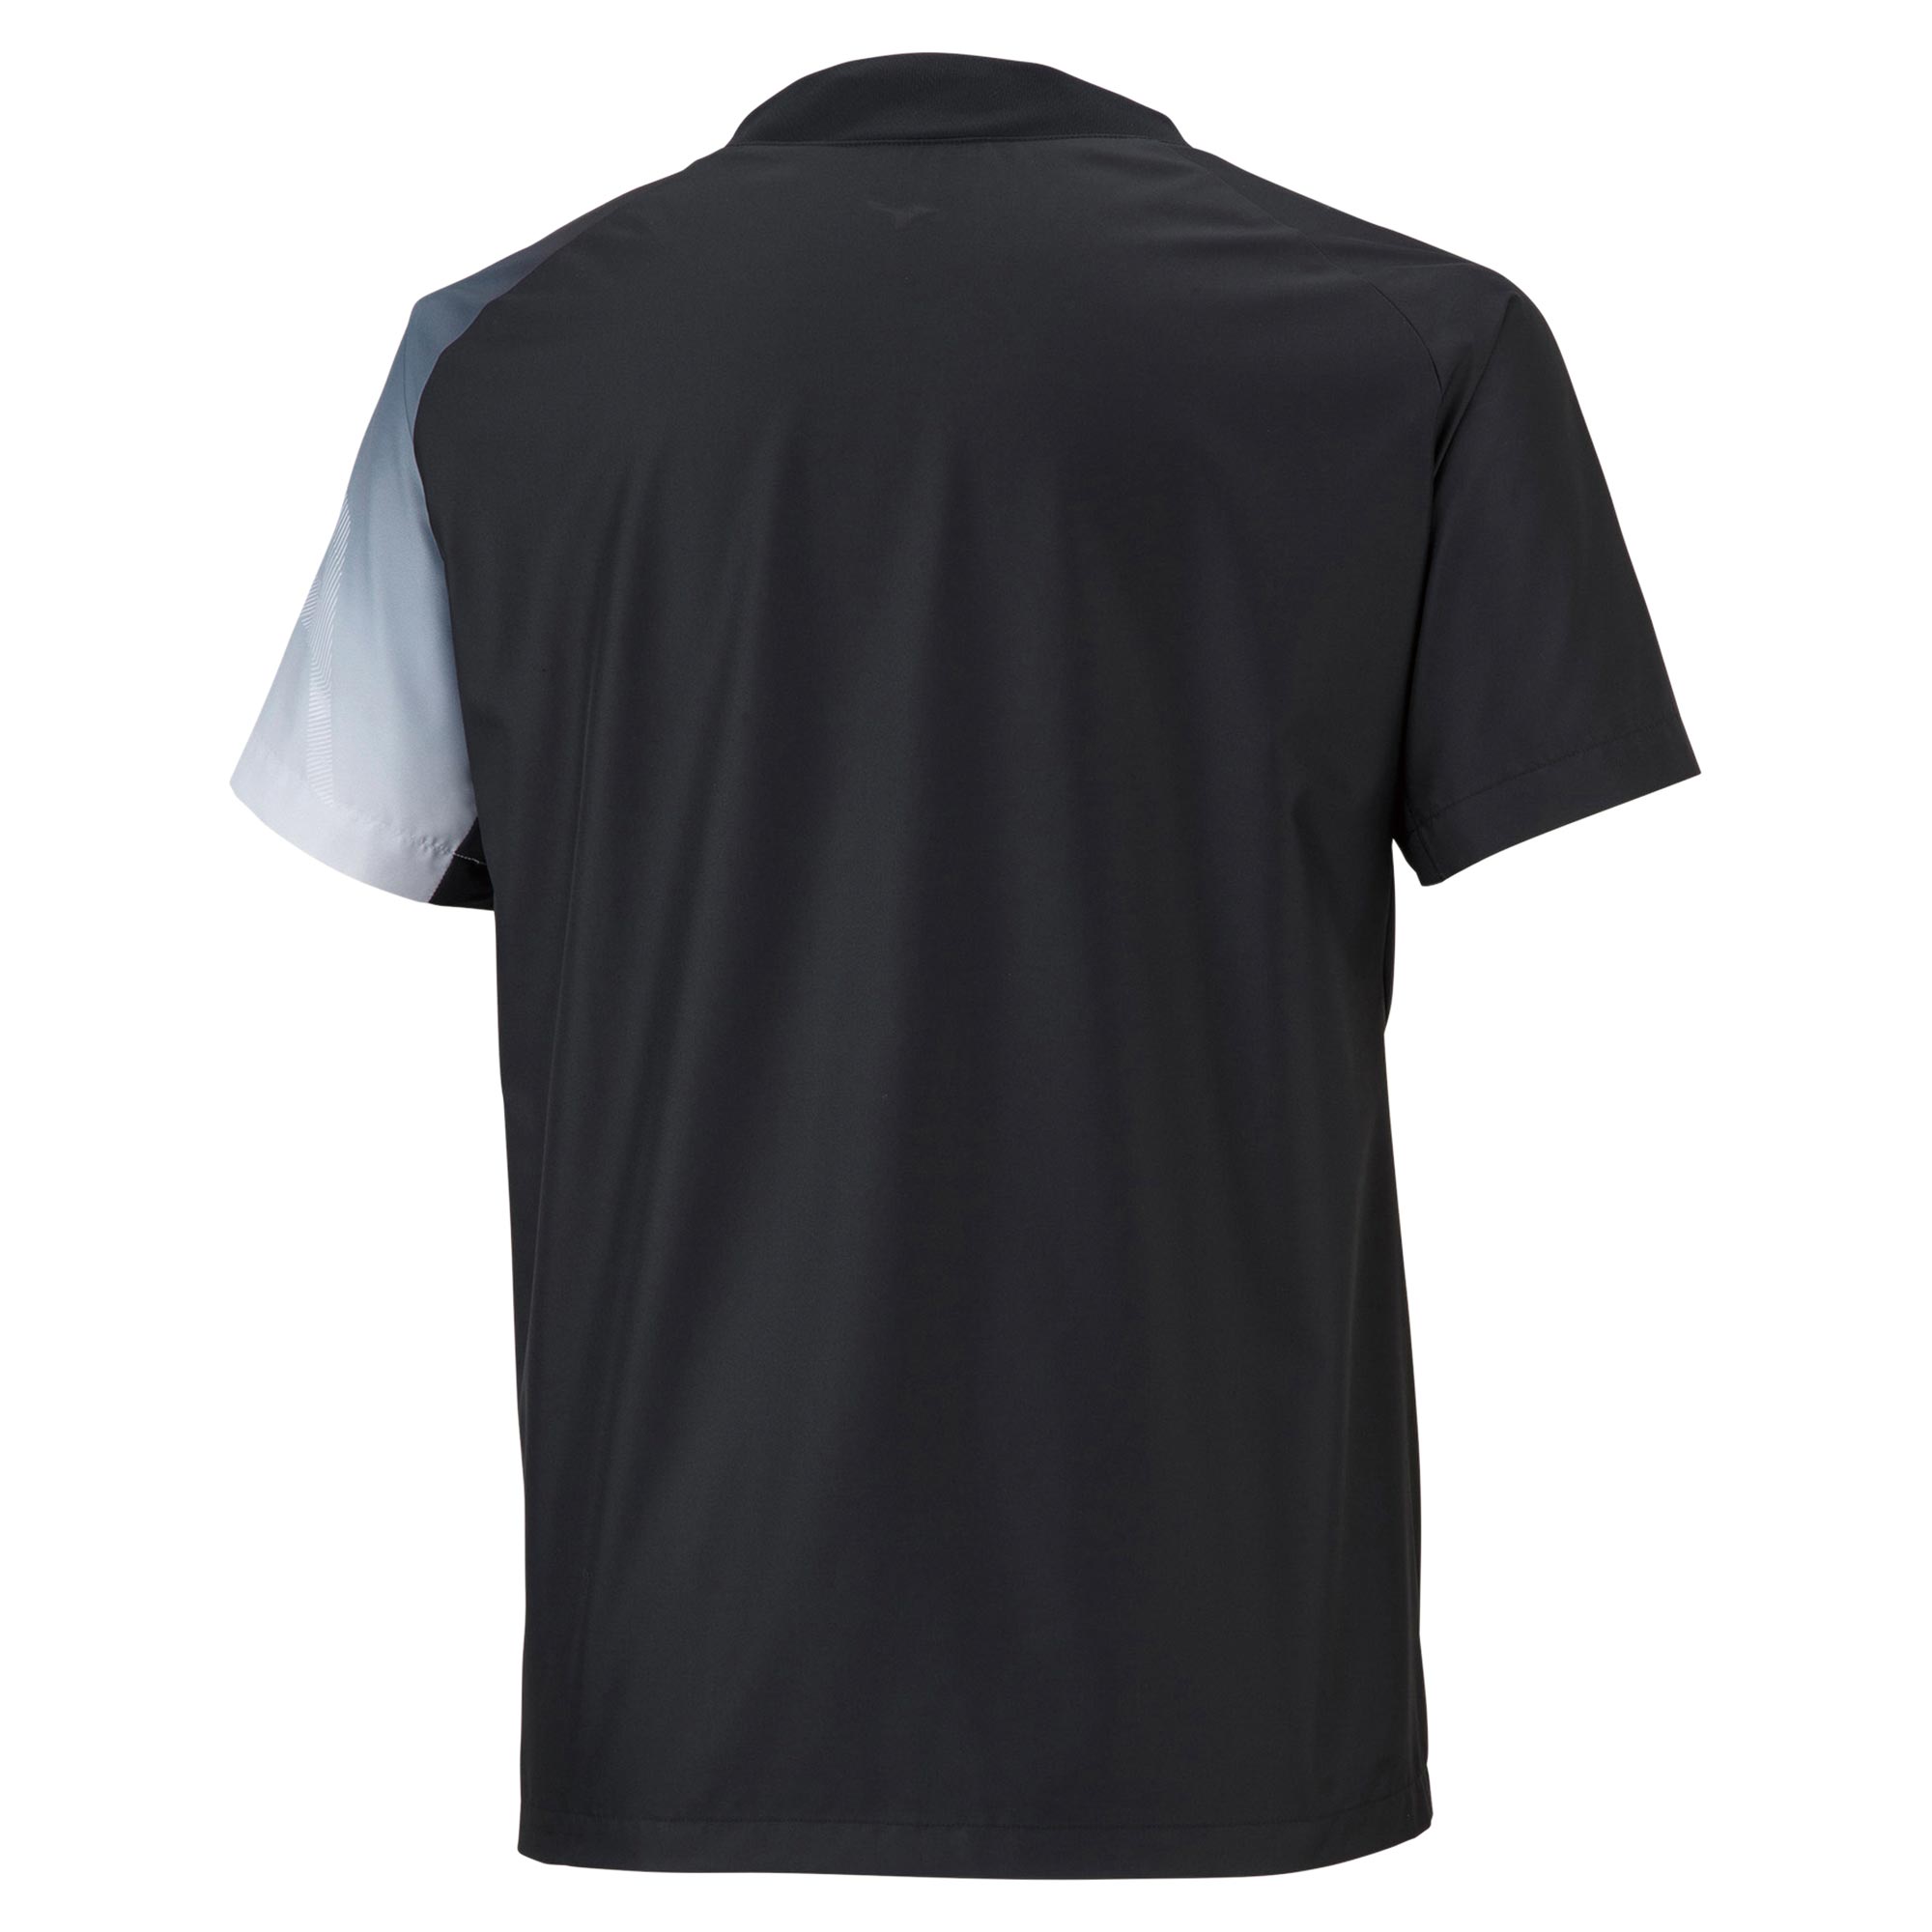 N-XTウィンドブレーカーシャツ(半袖)(バレーボール)[ユニセックス]|V2ME2002|ウエア|バレーボール|ミズノ公式オンライン